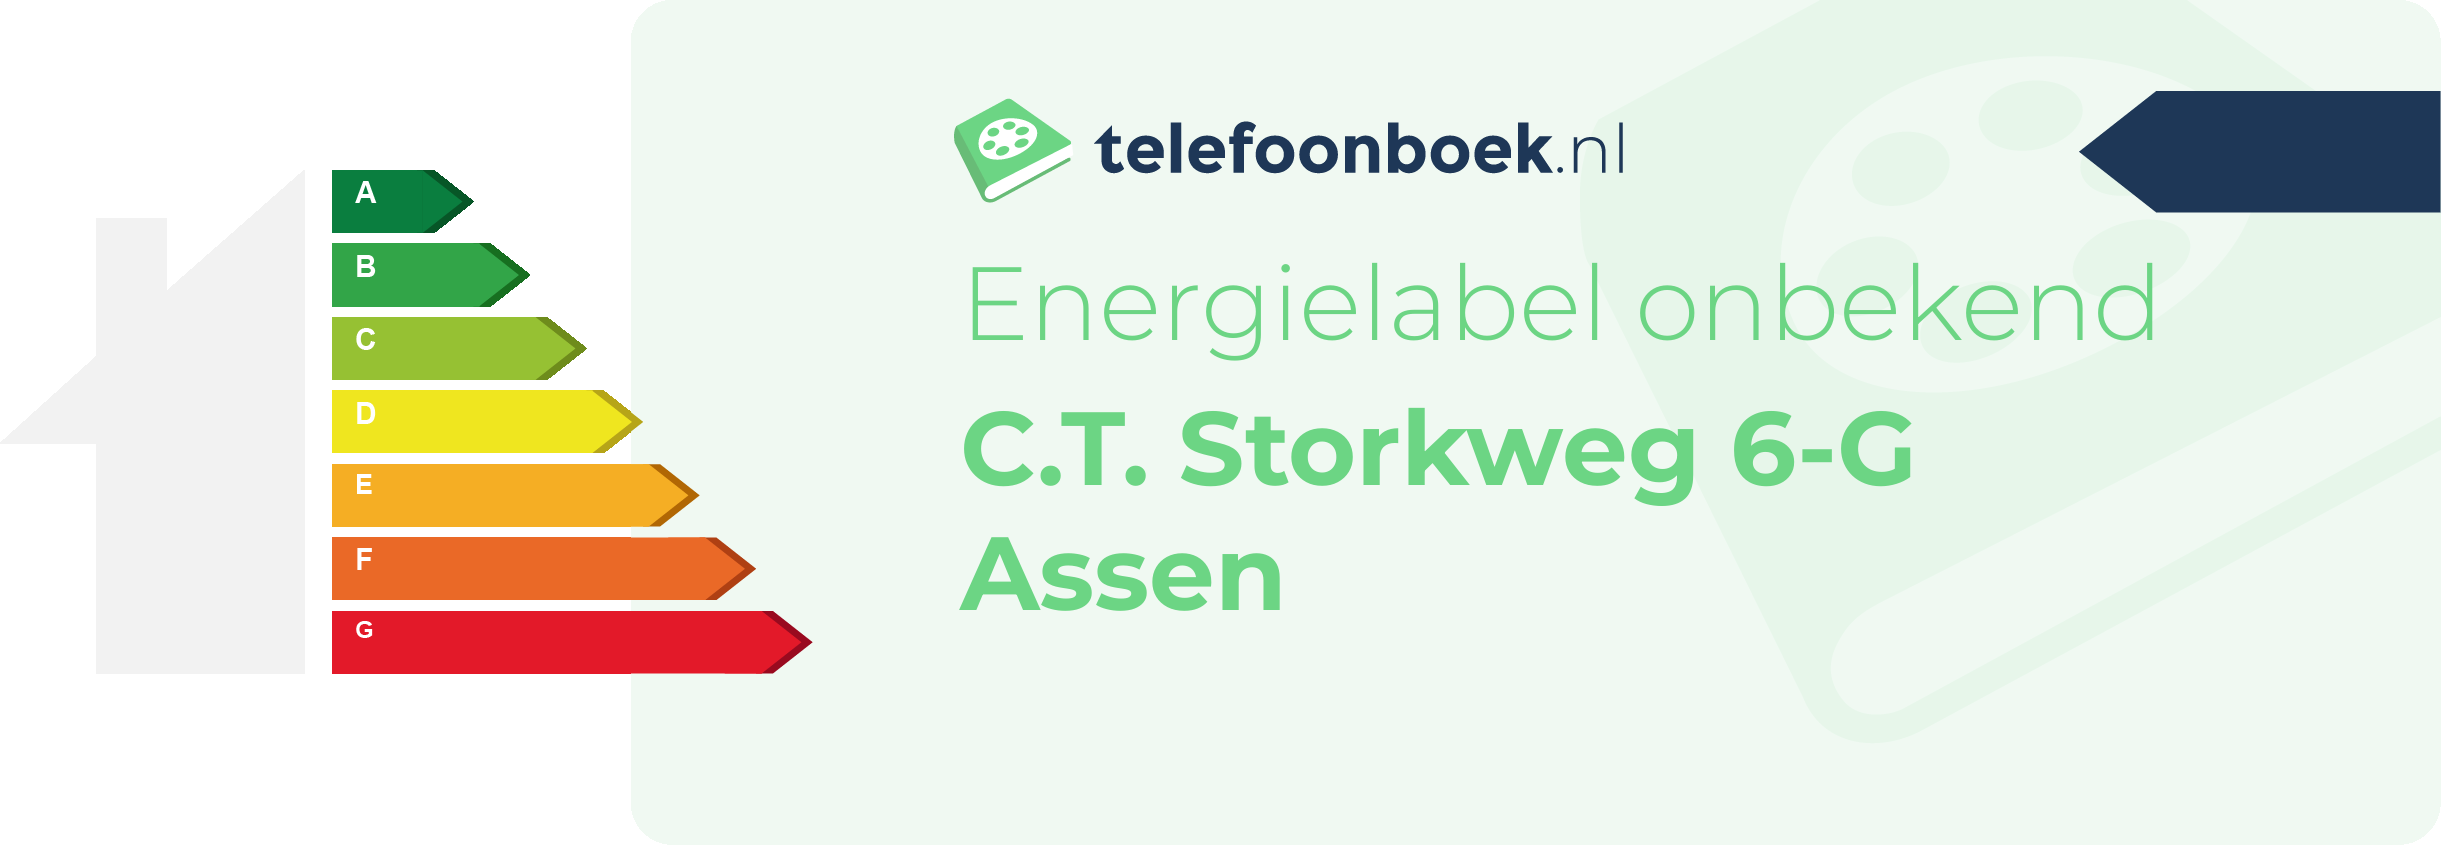 Energielabel C.T. Storkweg 6-G Assen